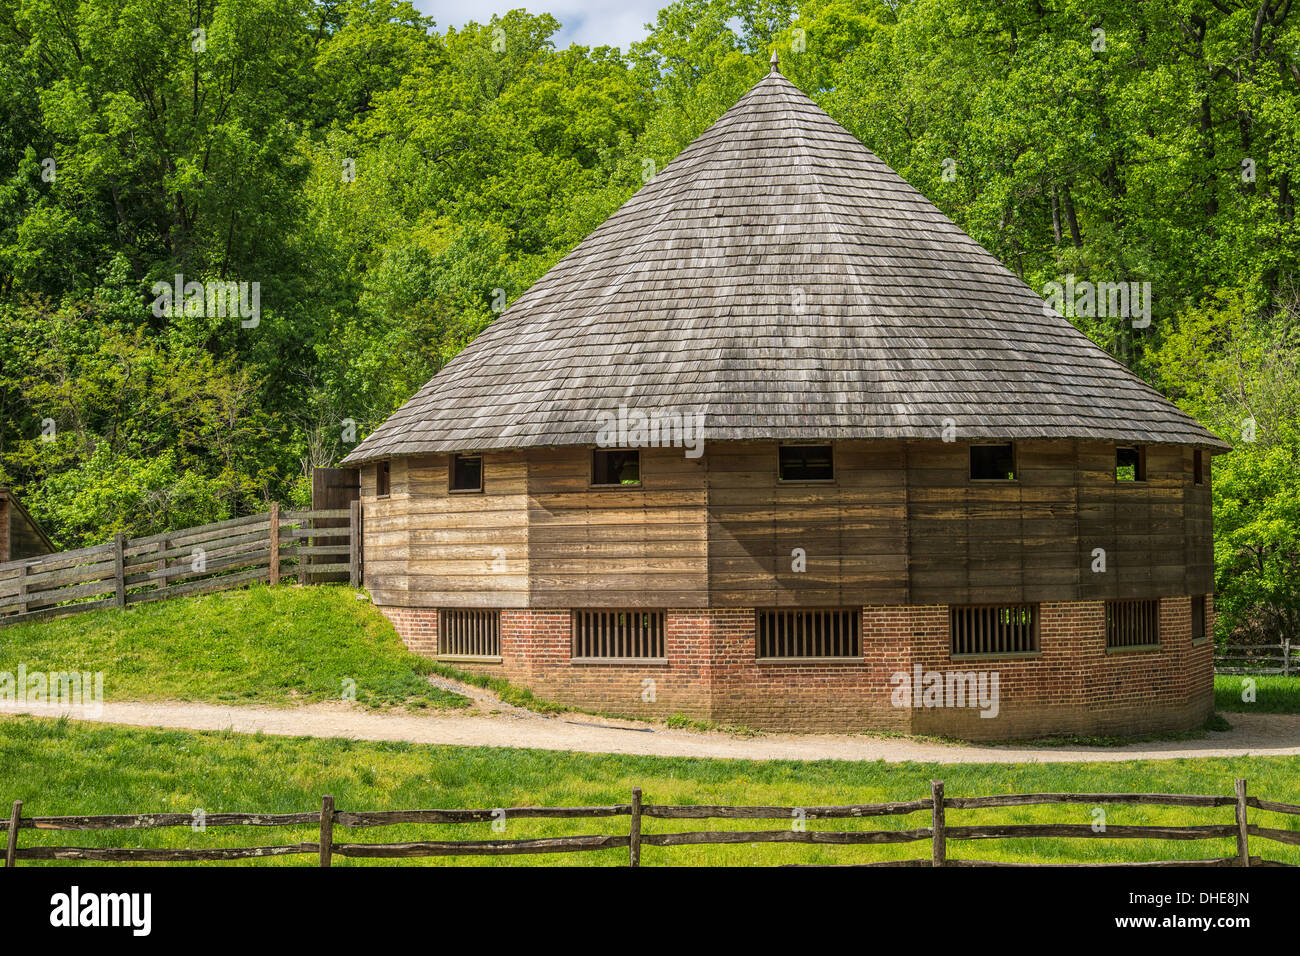 Runde Scheune erfunden von George Washington, Getreide aus trennen die Stiele und verwendet auf seinem gut Mount Vernon in Virginia Stockfoto